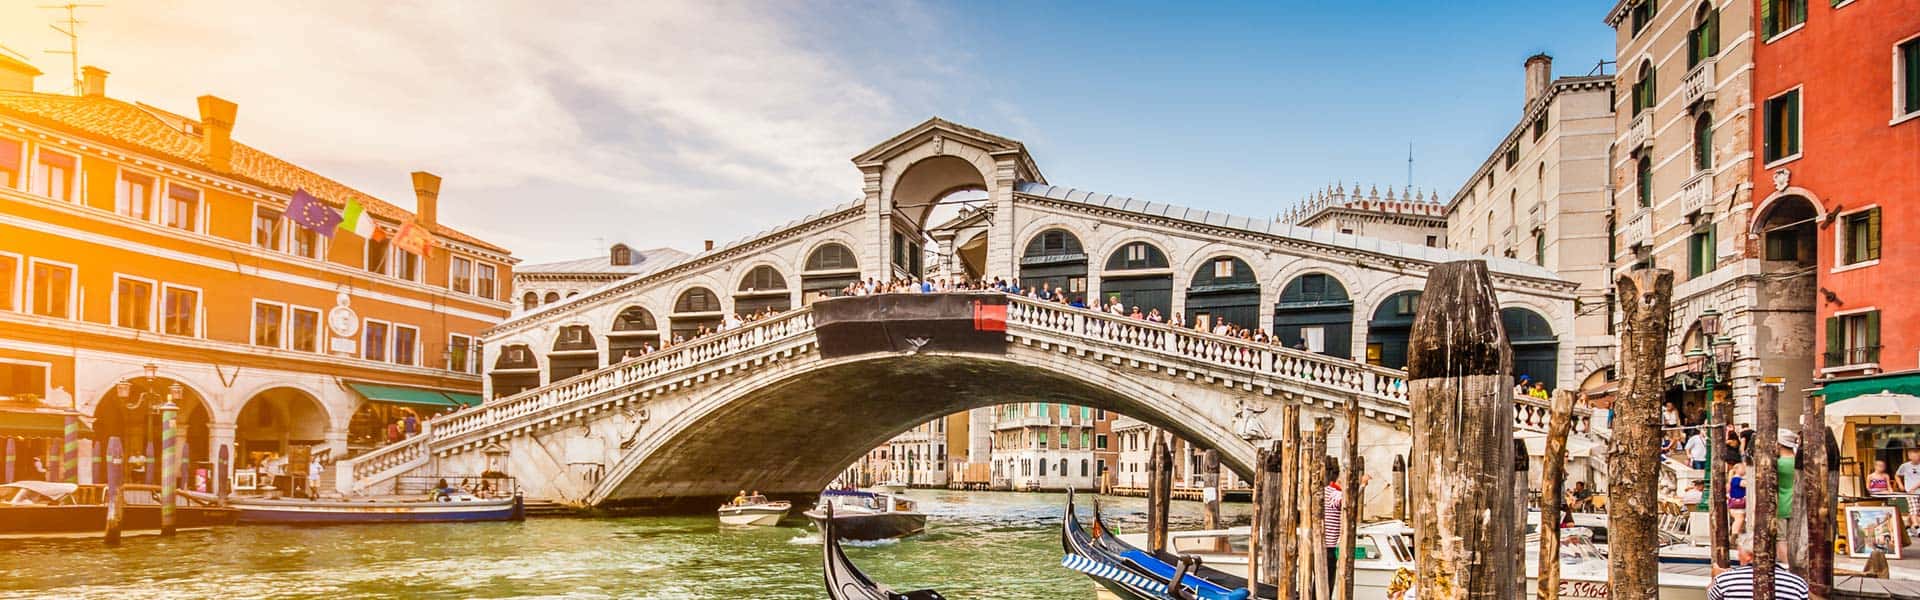 Italienische Geschichte erleben: die Rialtobrücke in Venedig